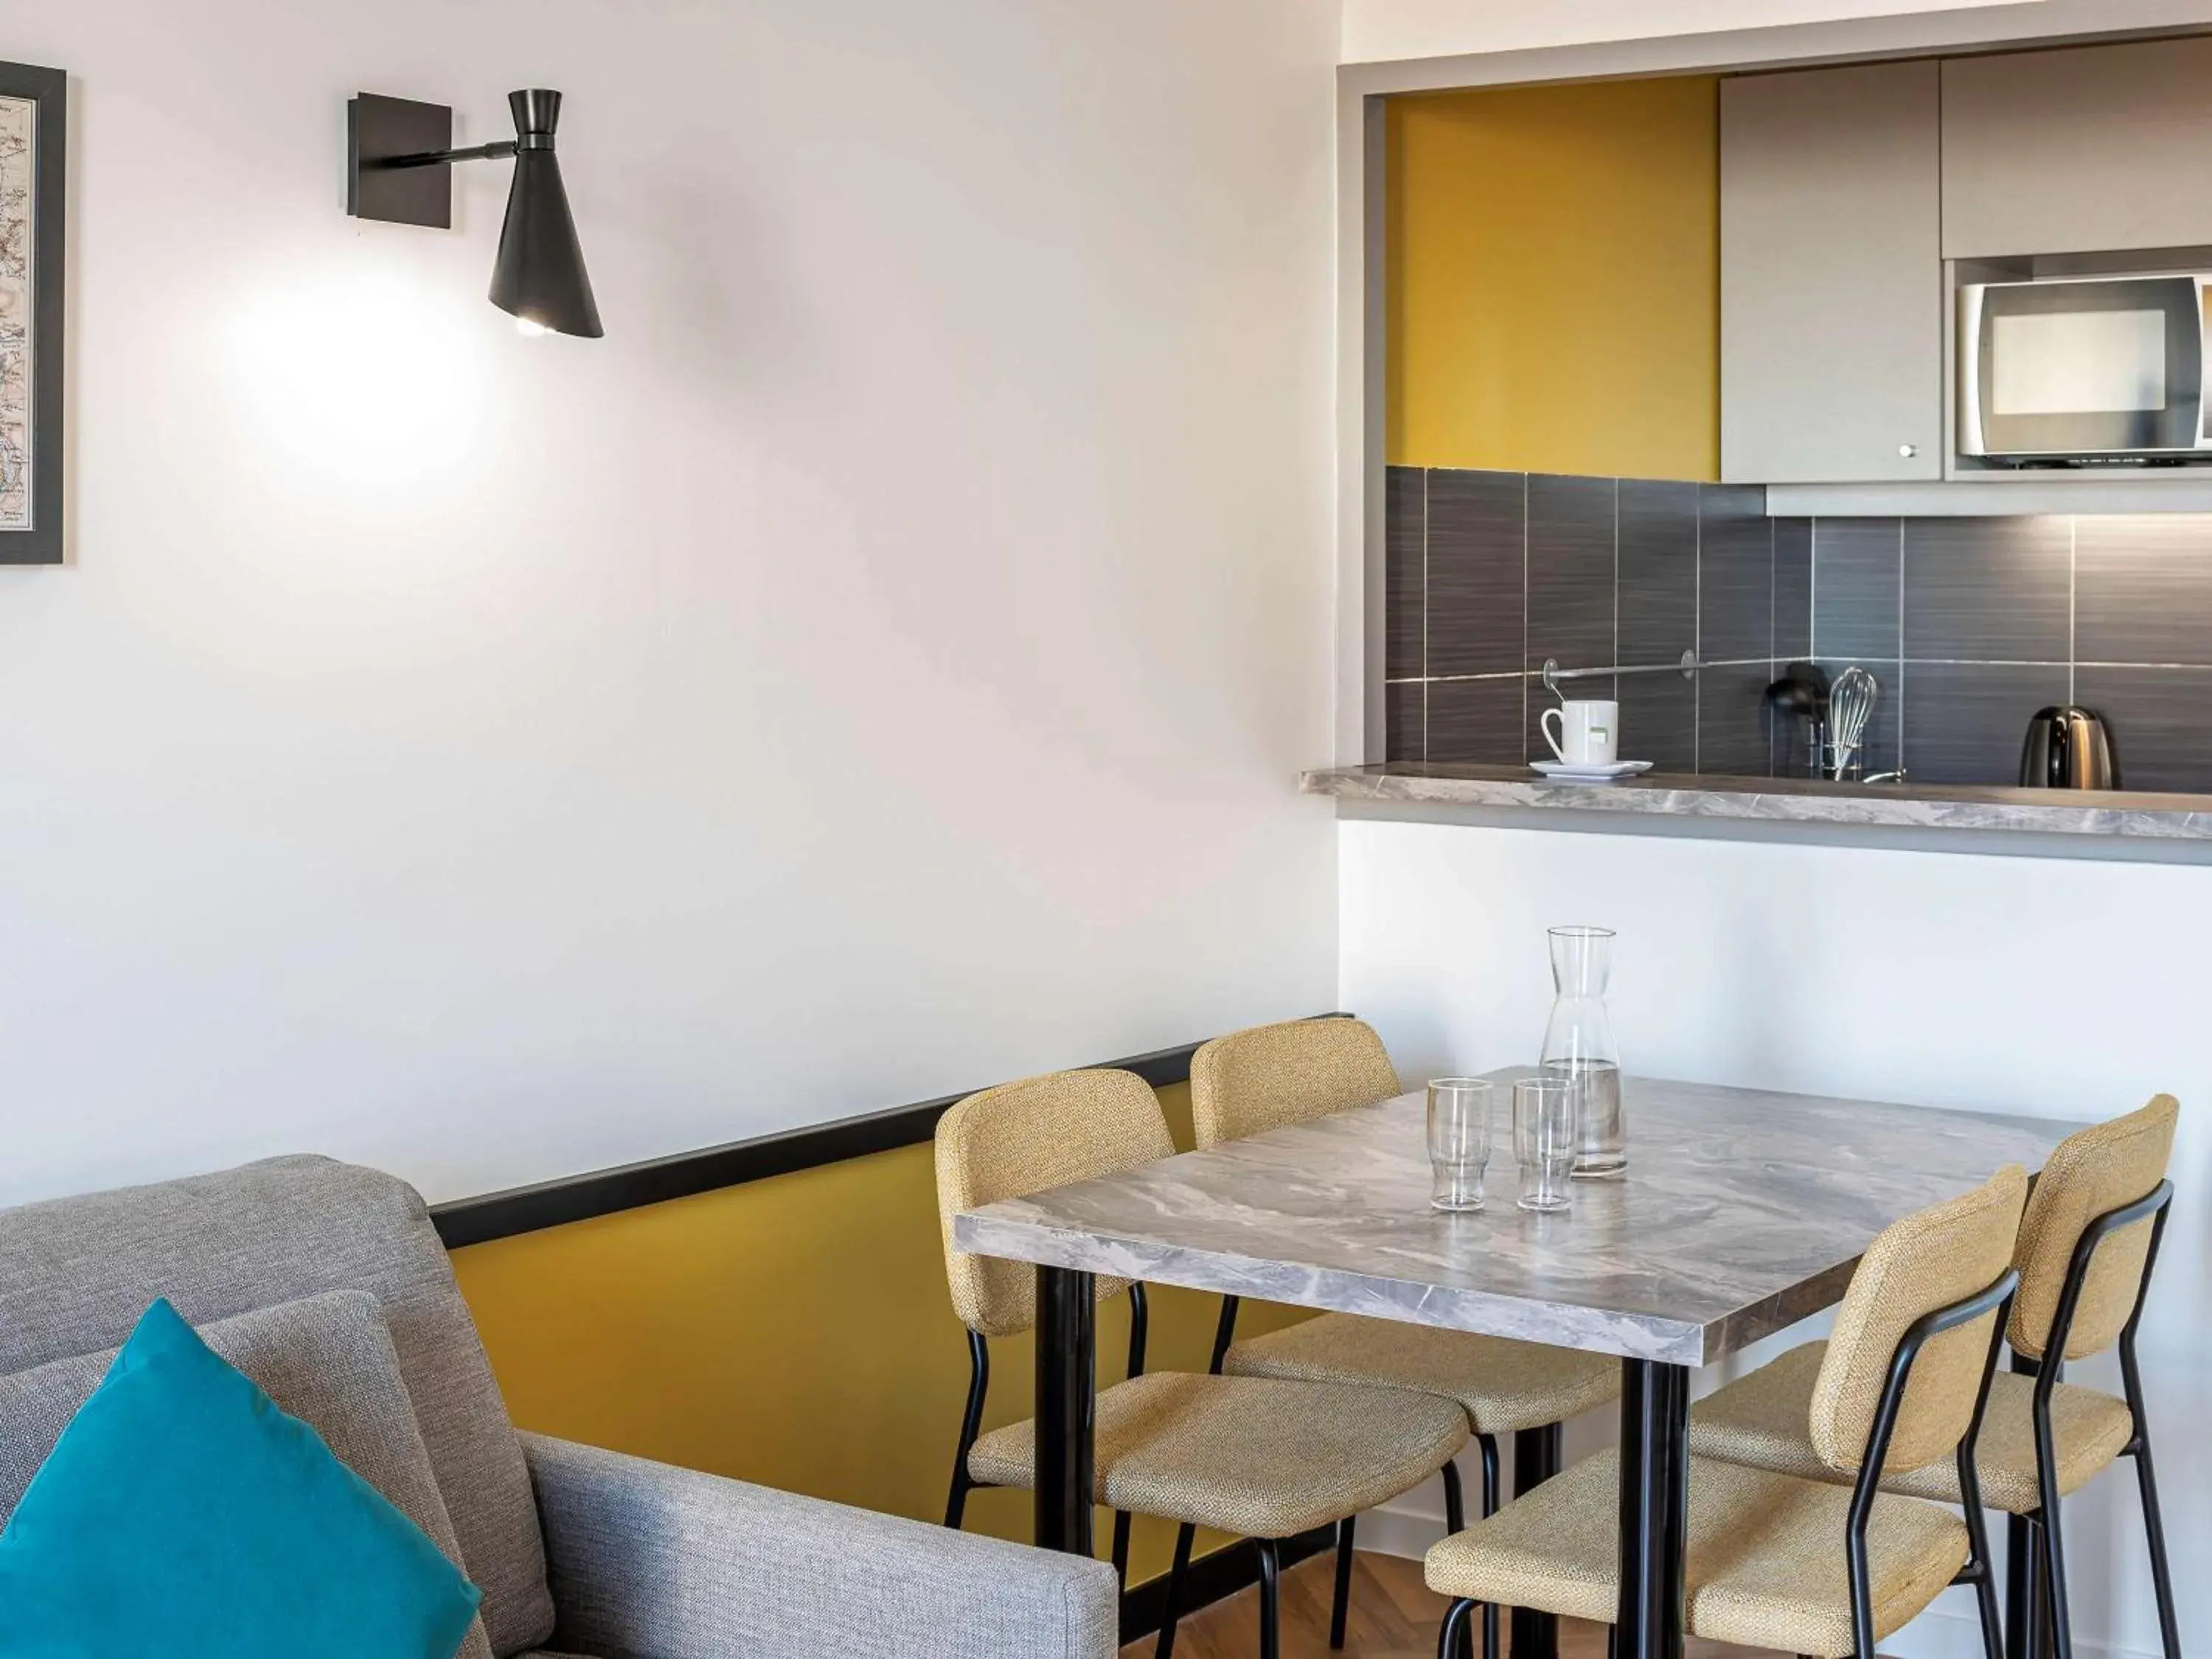 Photo of the whole room, Dining Area in Aparthotel Adagio Paris Montrouge